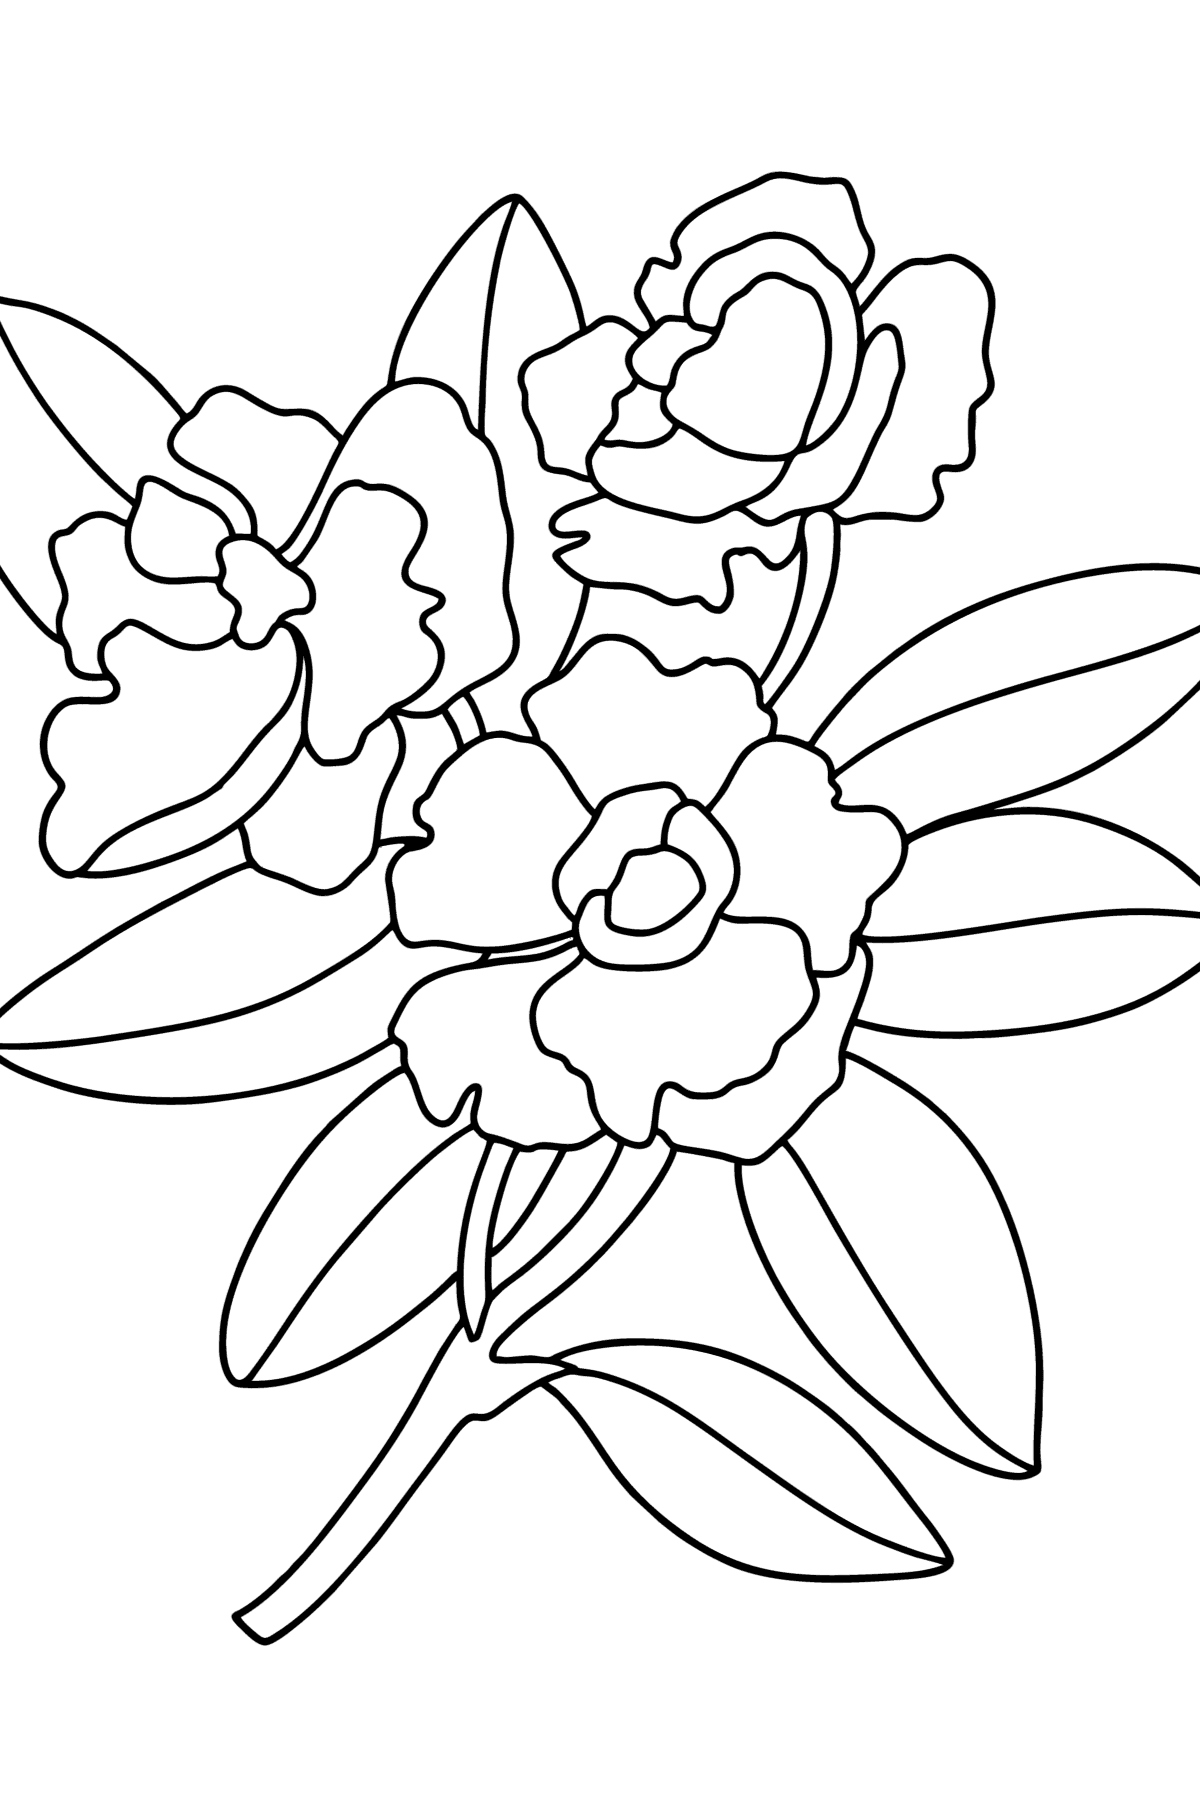 Kleurplaat Gardenia - kleurplaten voor kinderen